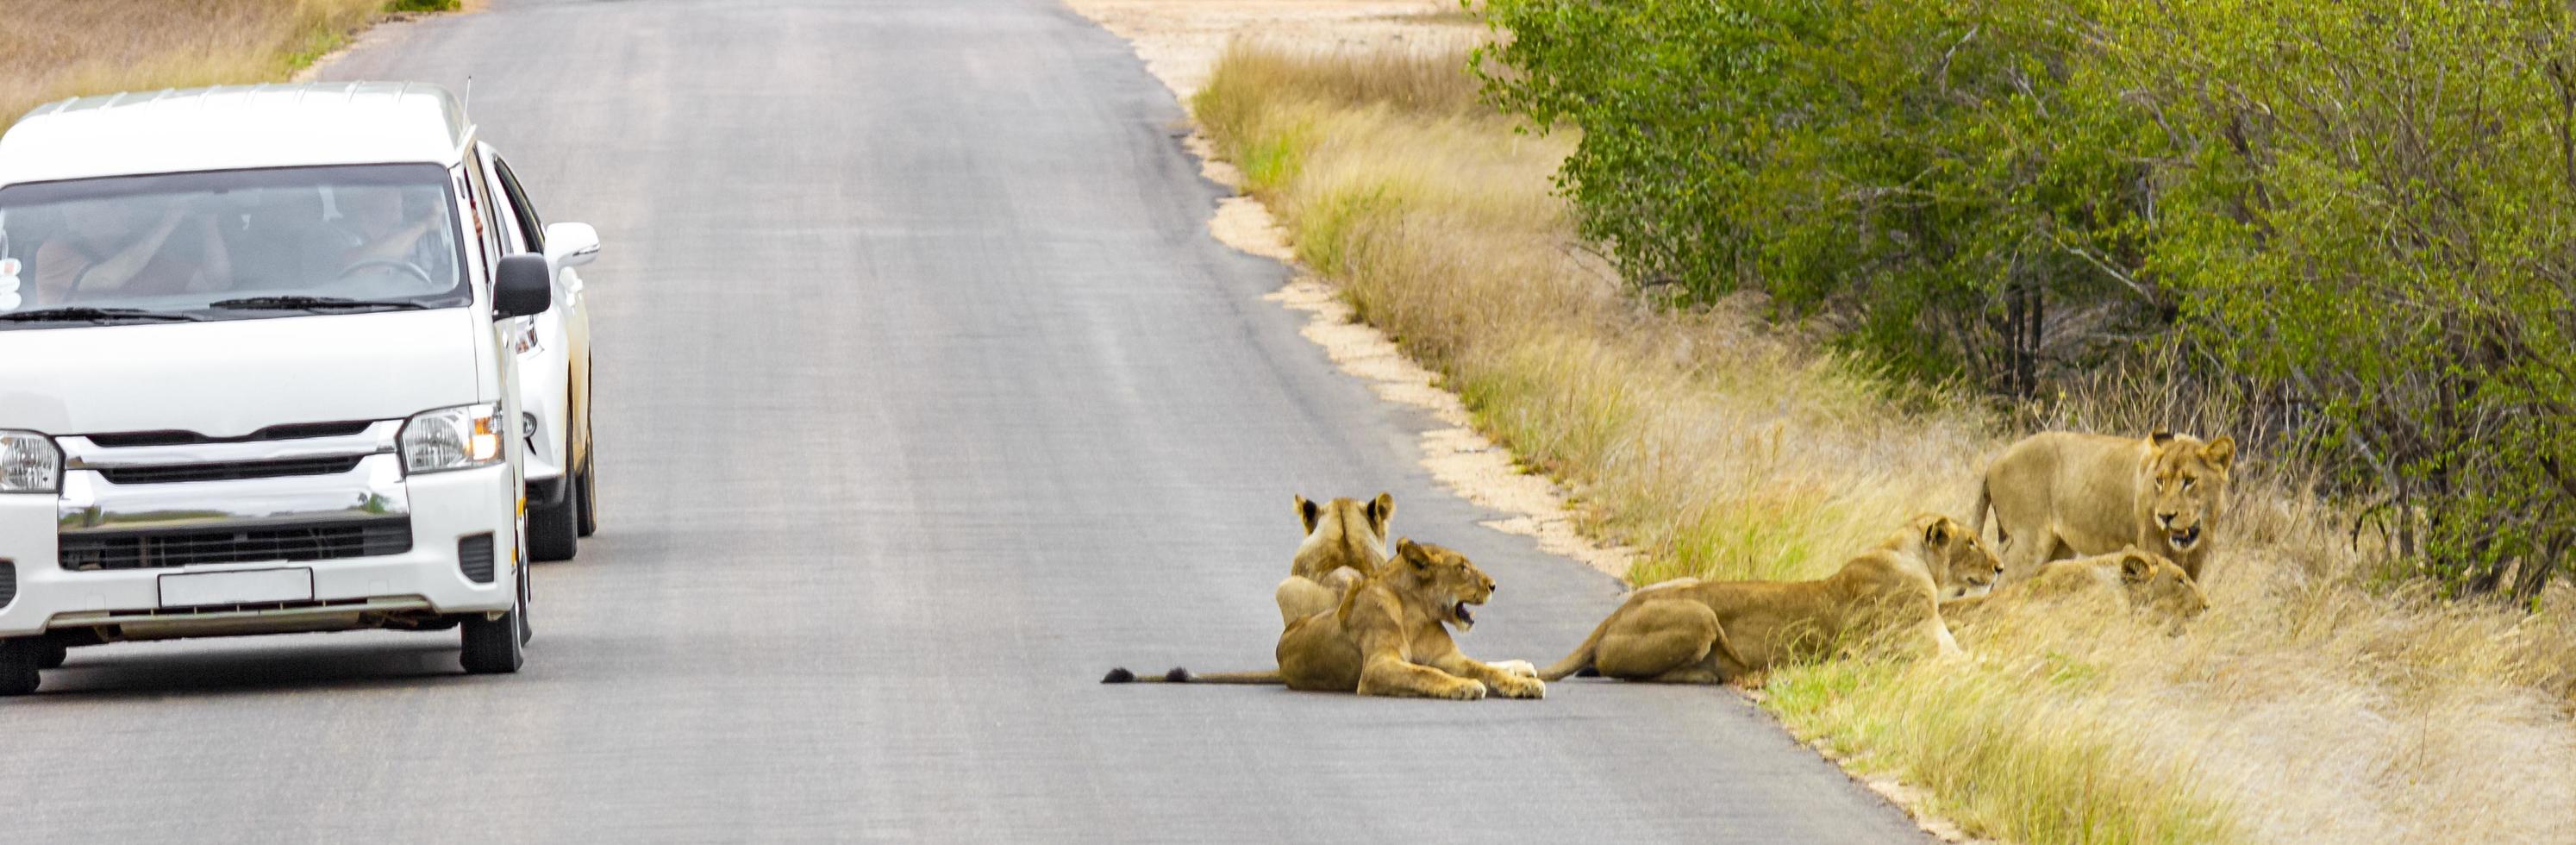 i leoni si rilassano su street parco nazionale Kruger safari in sud africa. foto